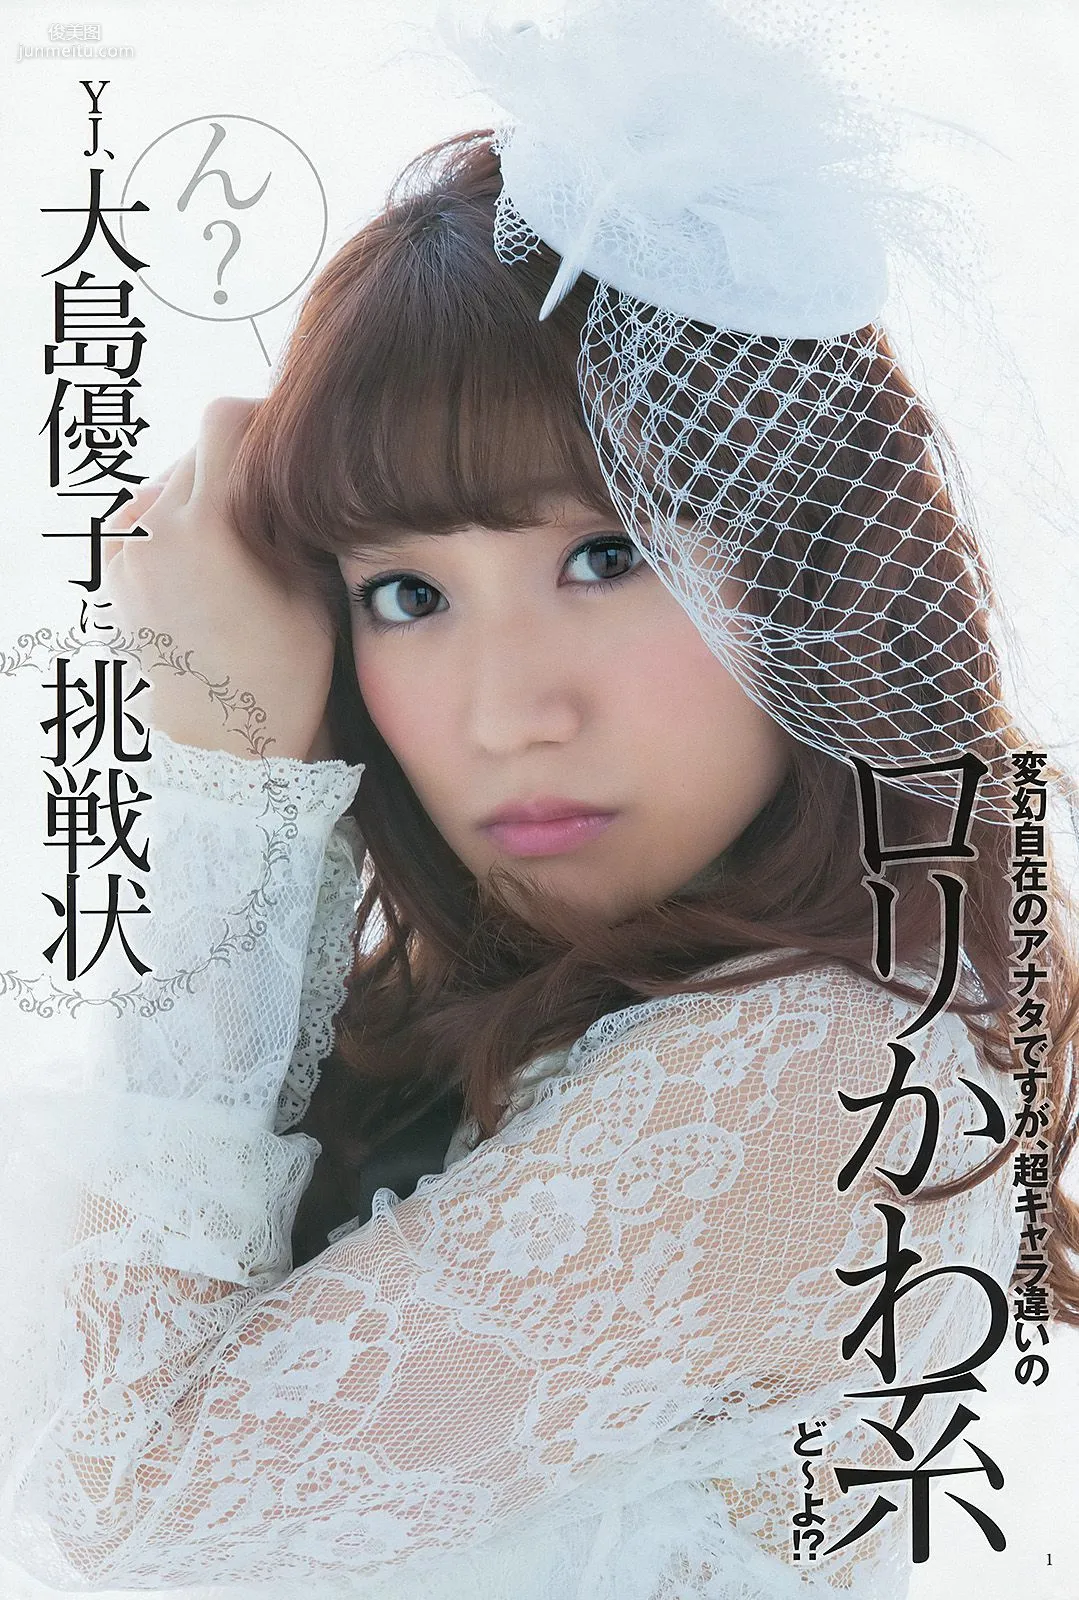 大島優子 乃木坂46 AKB48 ウェイティングガールズ [Weekly Young Jump] 2012年No.40 写真杂志2